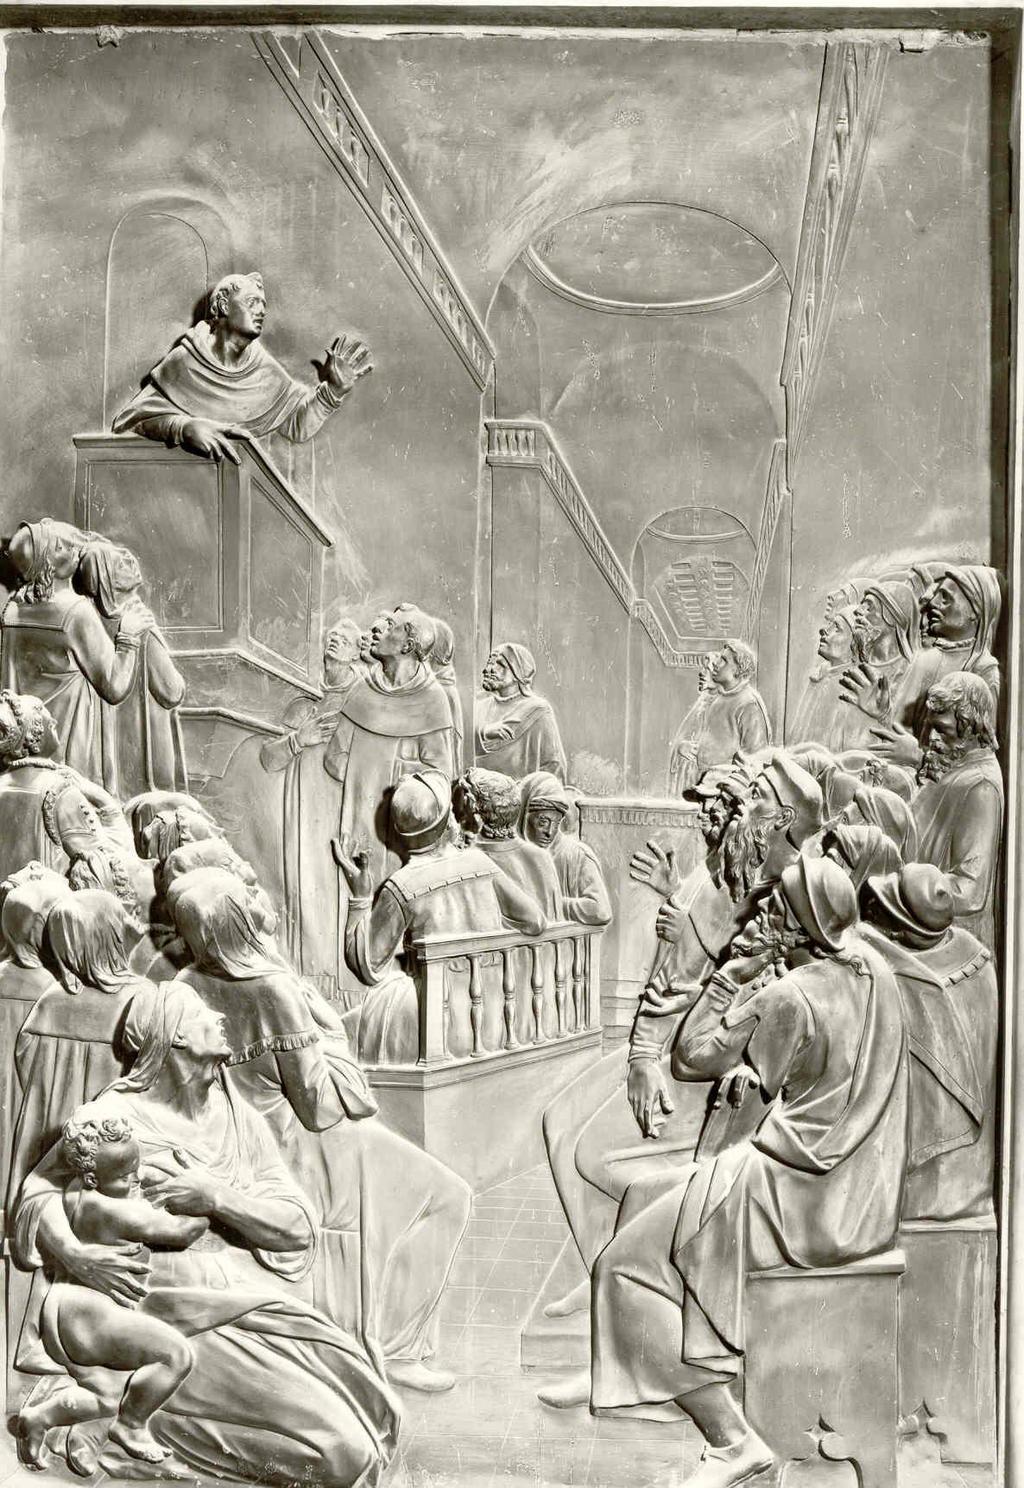 נירית בן אריה דבי איור 5 ג'אמבולוניה, אנטונינוס מטיף בסן מרקו פירנצה, סן מרקו, קפלת אנטונינוס הקדוש.